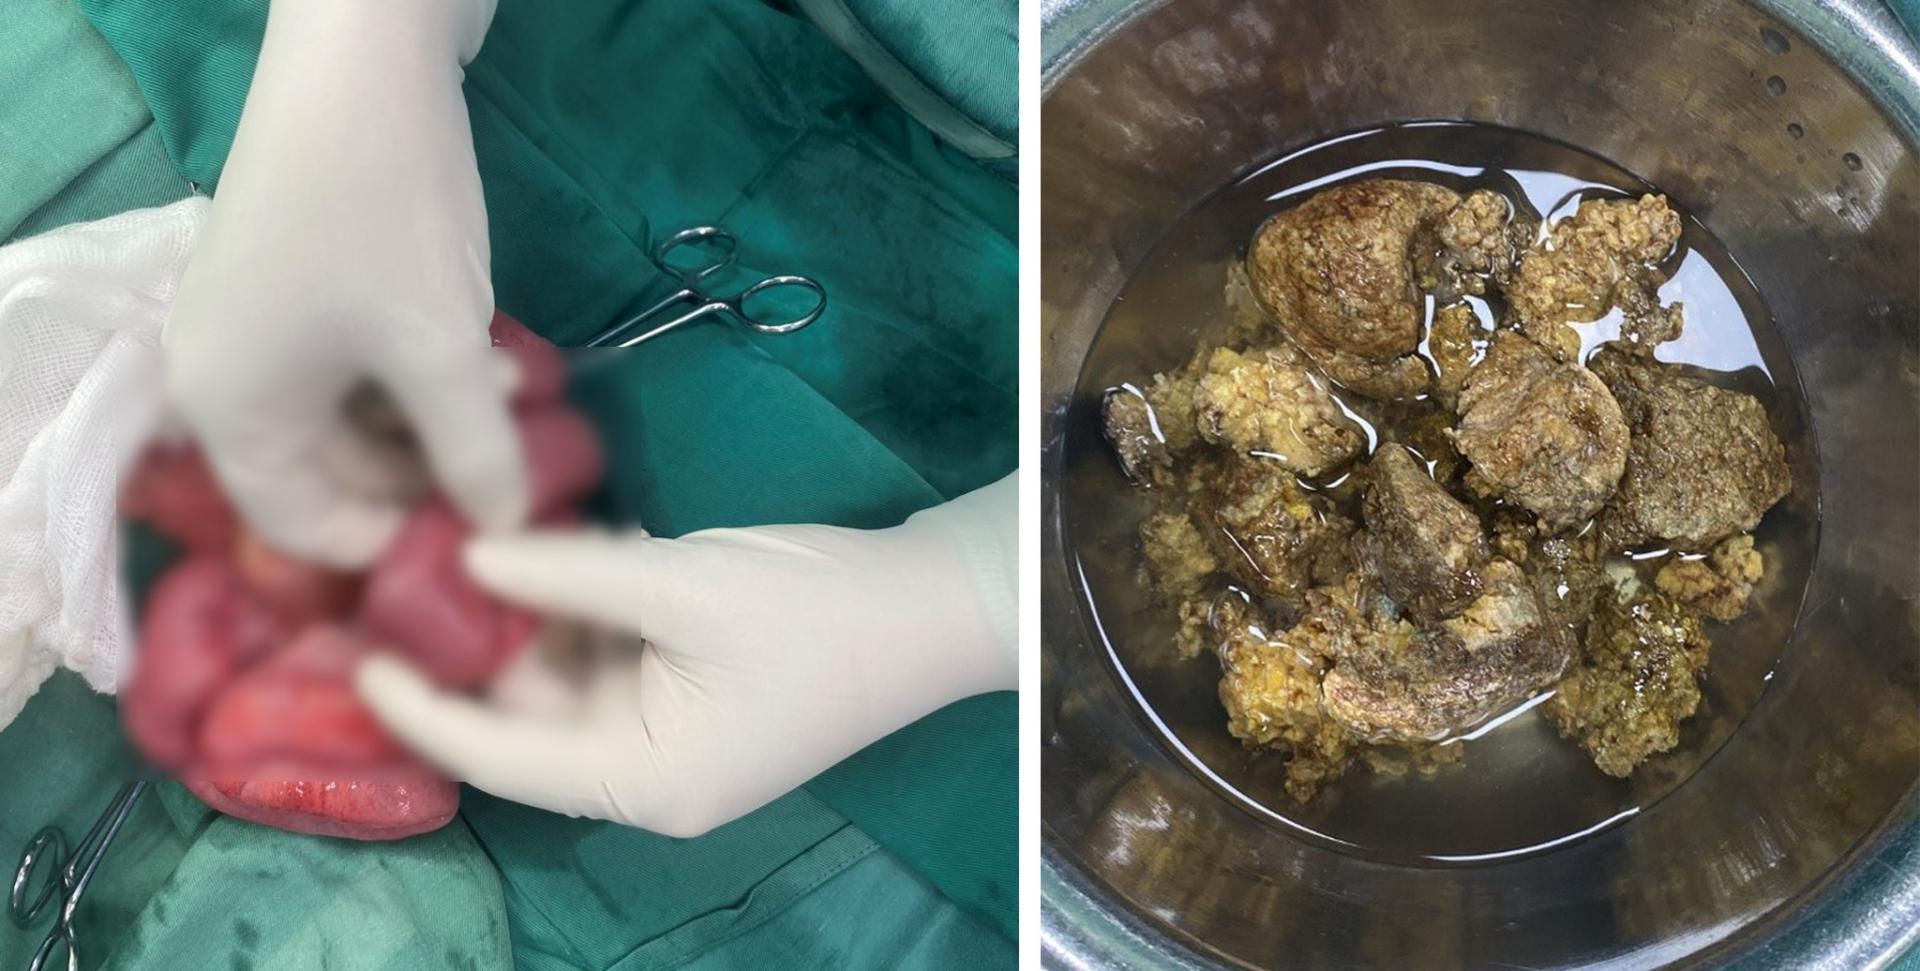 Hình ảnh bã thức ăn bít tắc trong lòng ruột và bã thức ăn sau khi được phẫu thuật lấy ra sau ca phẫu thuật